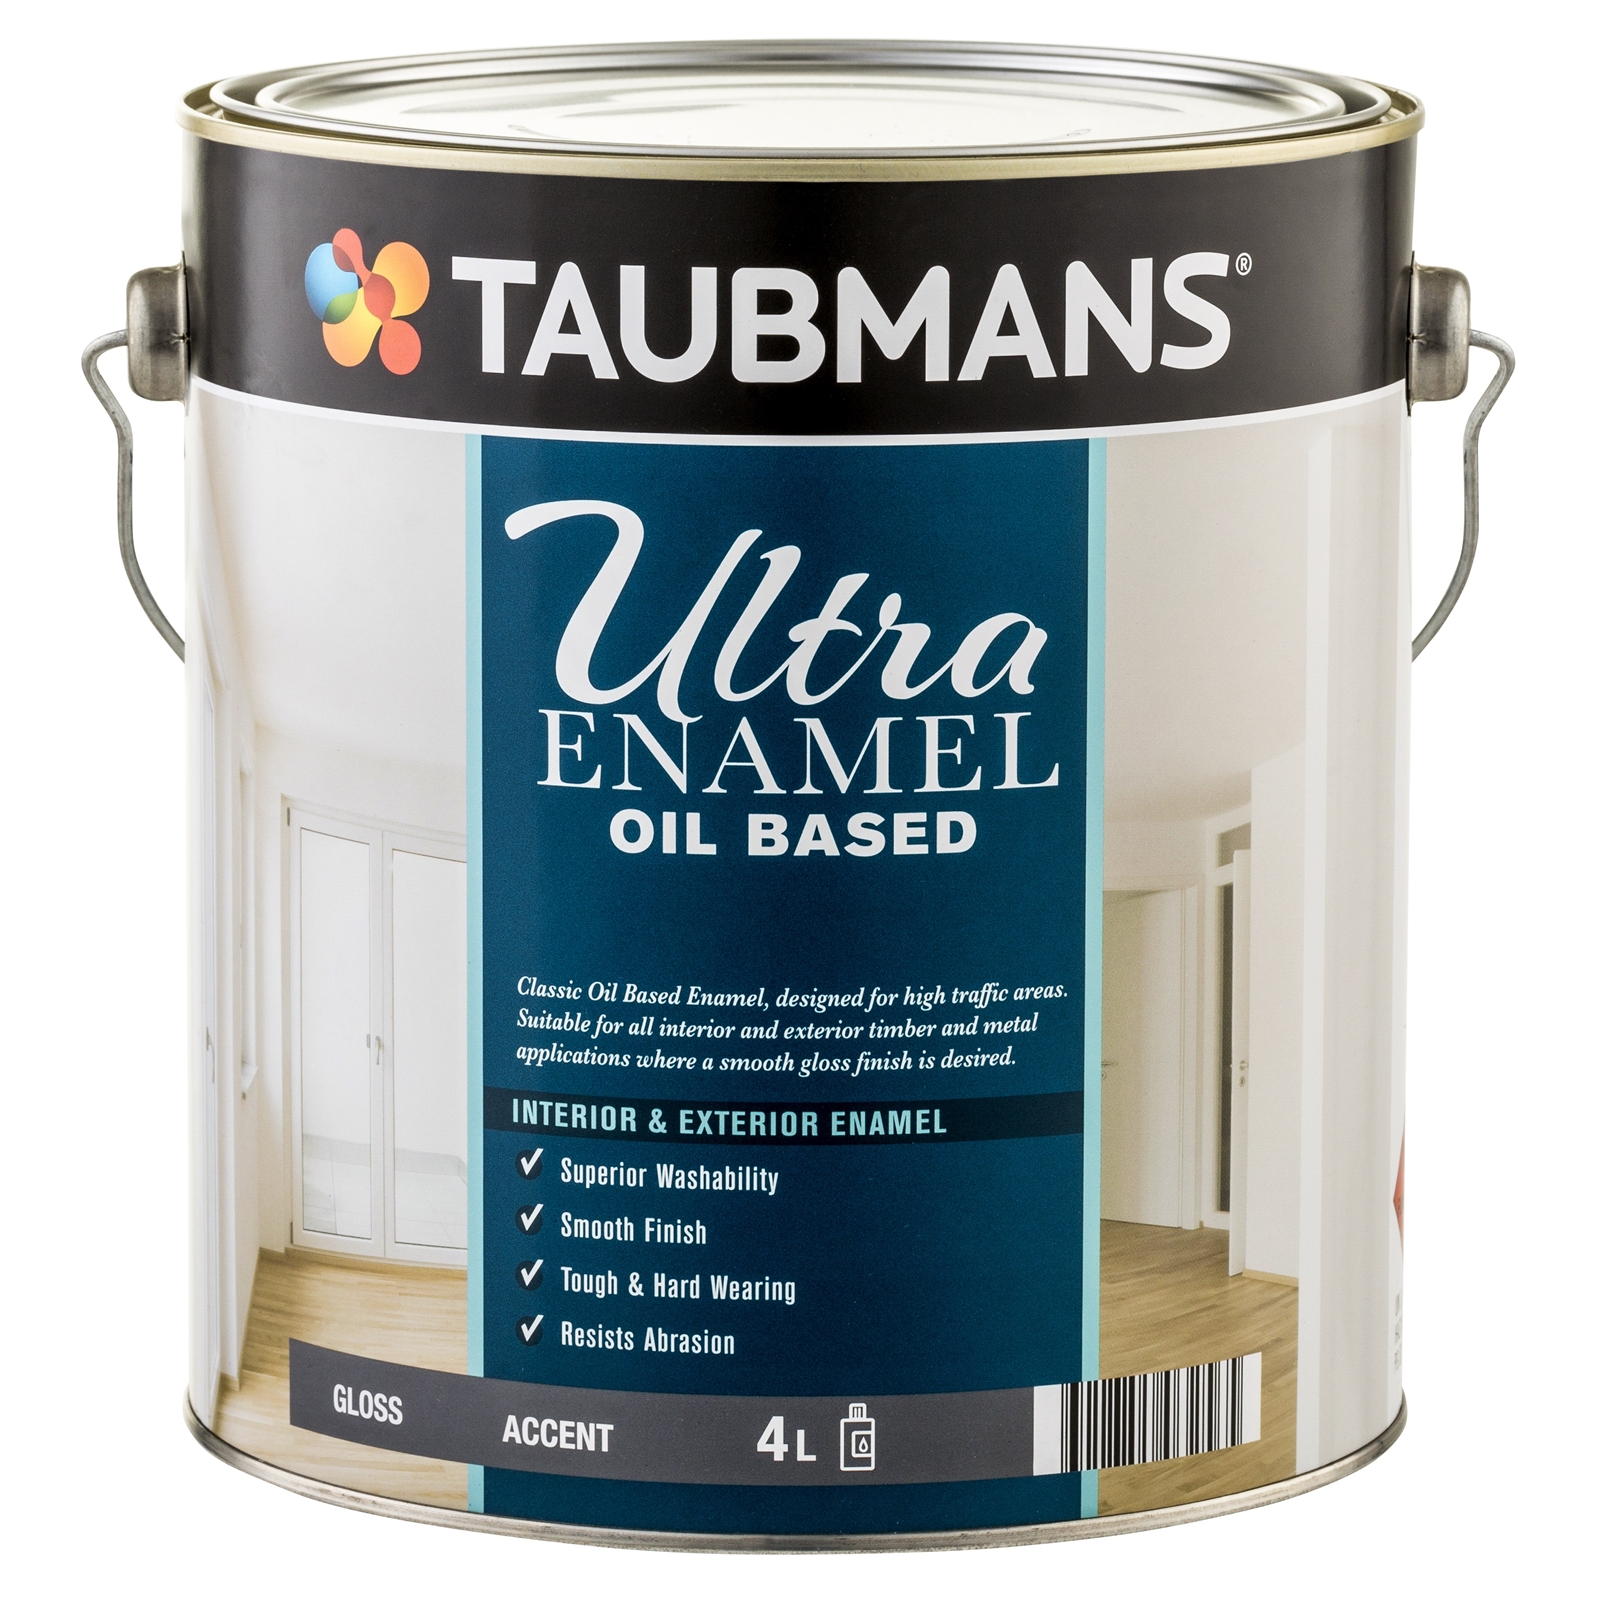 Taubmans Ultra Enamel 4L Accent Gloss Oil Based Enamel